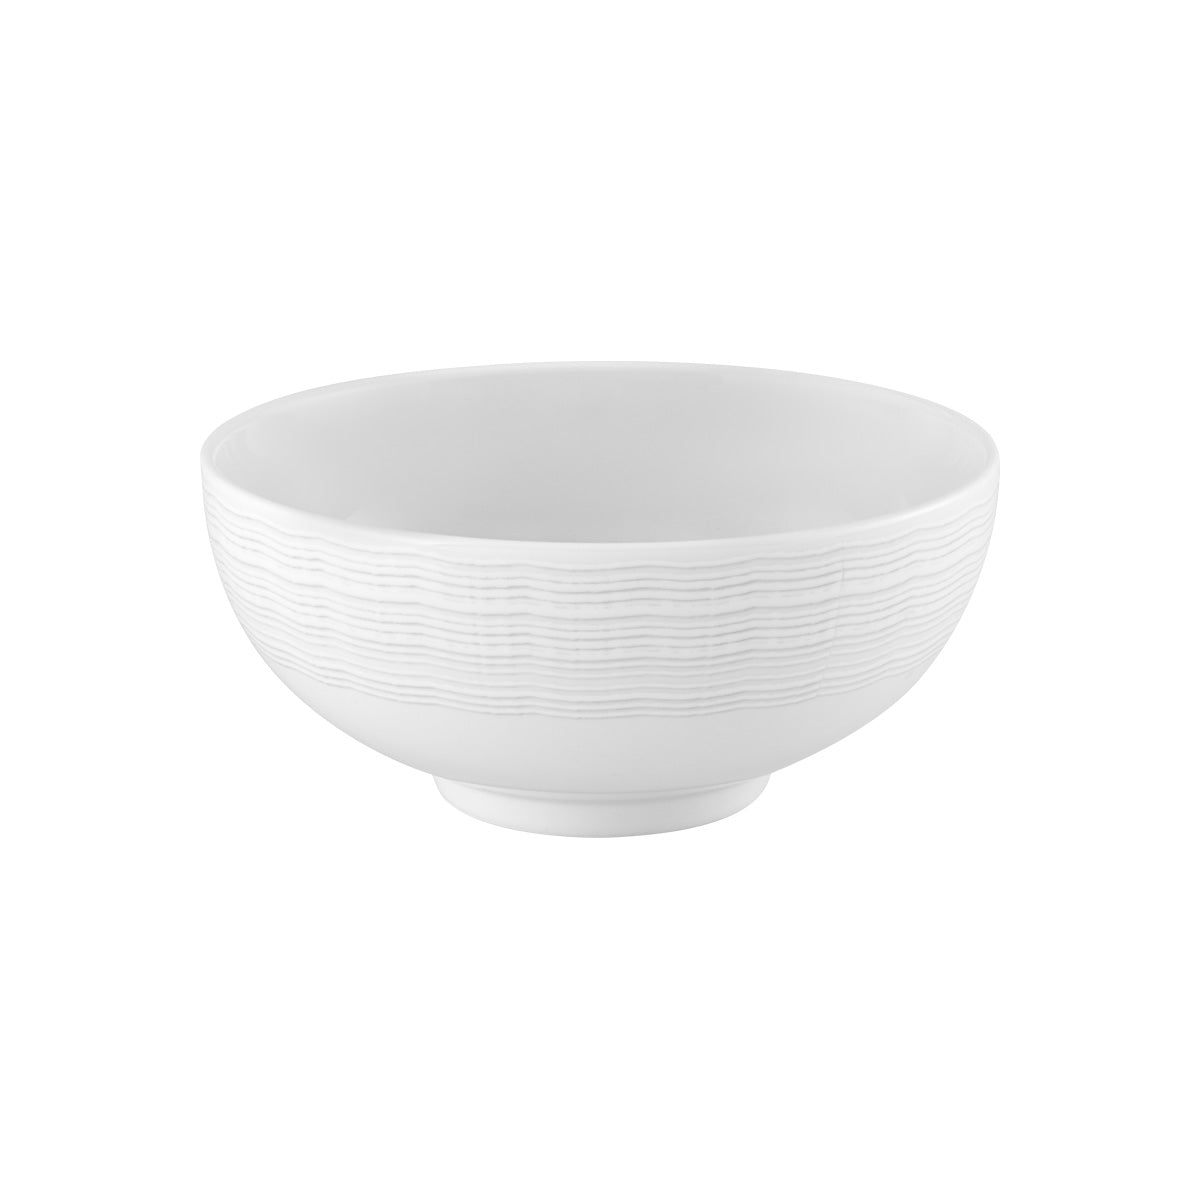 Bowl sopa blanco 14 cm - 541 ml Mar